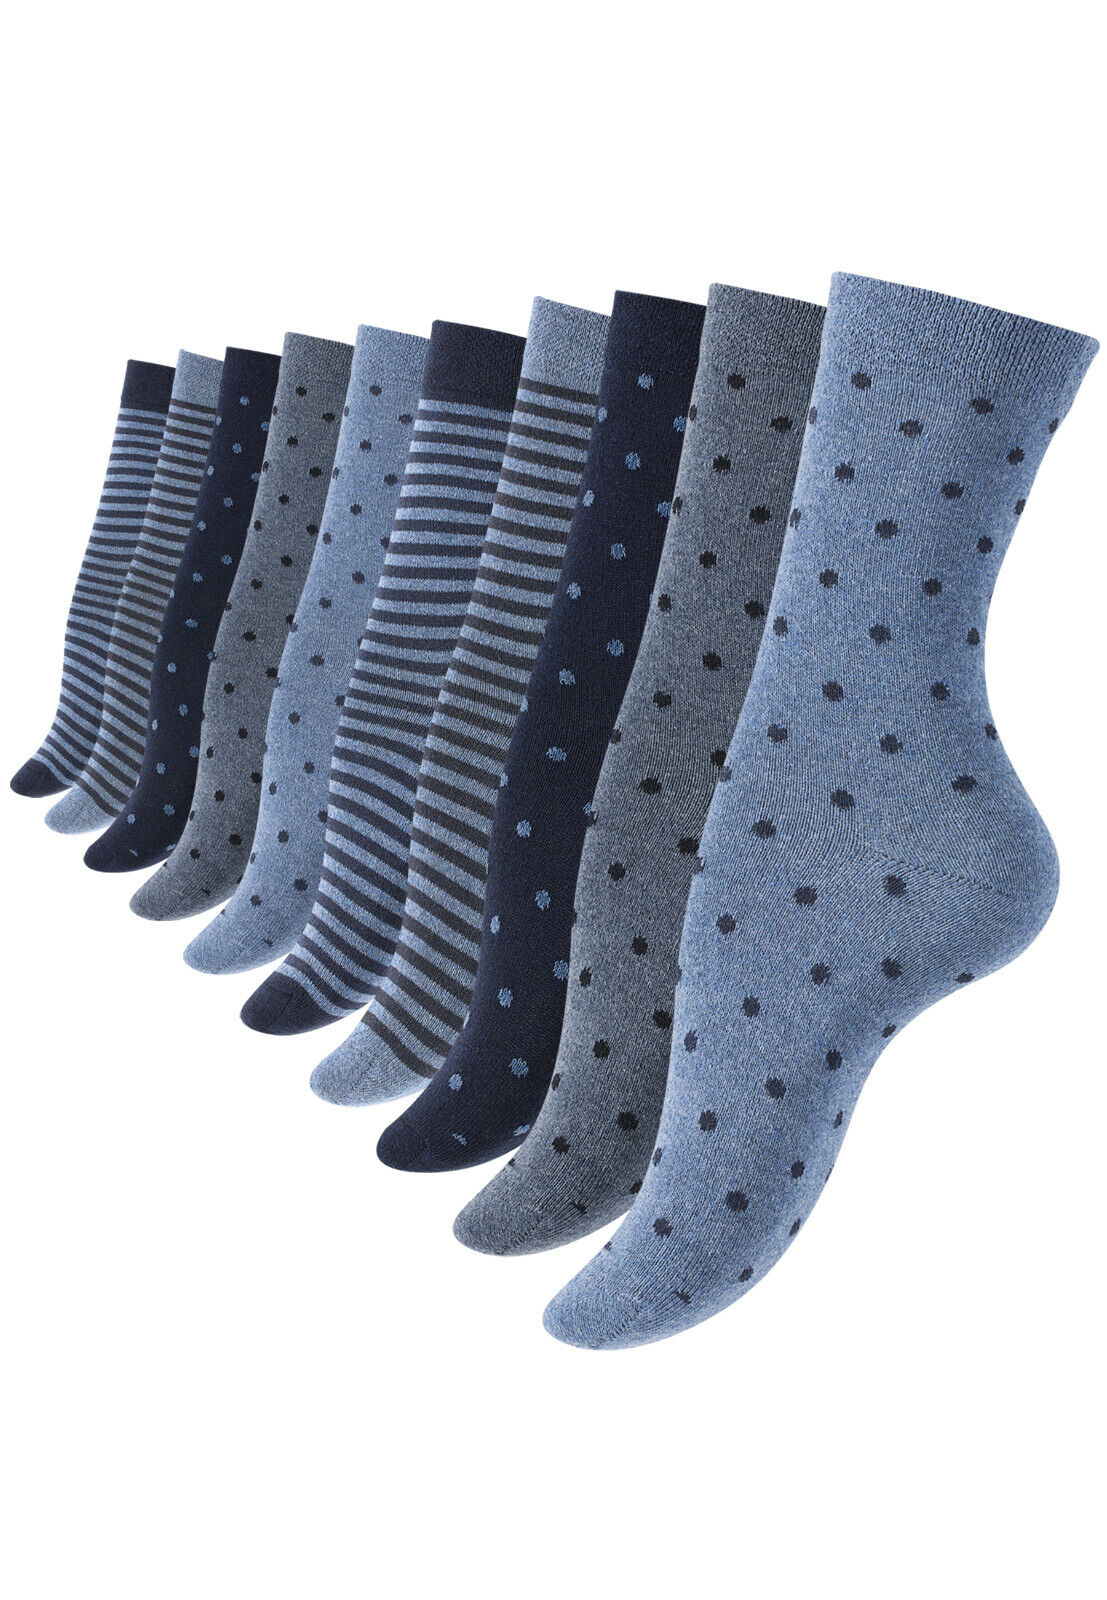 10 oder 20 Paar Damen Mädchen Socken Damensocken Baumwolle Punkte Streifen